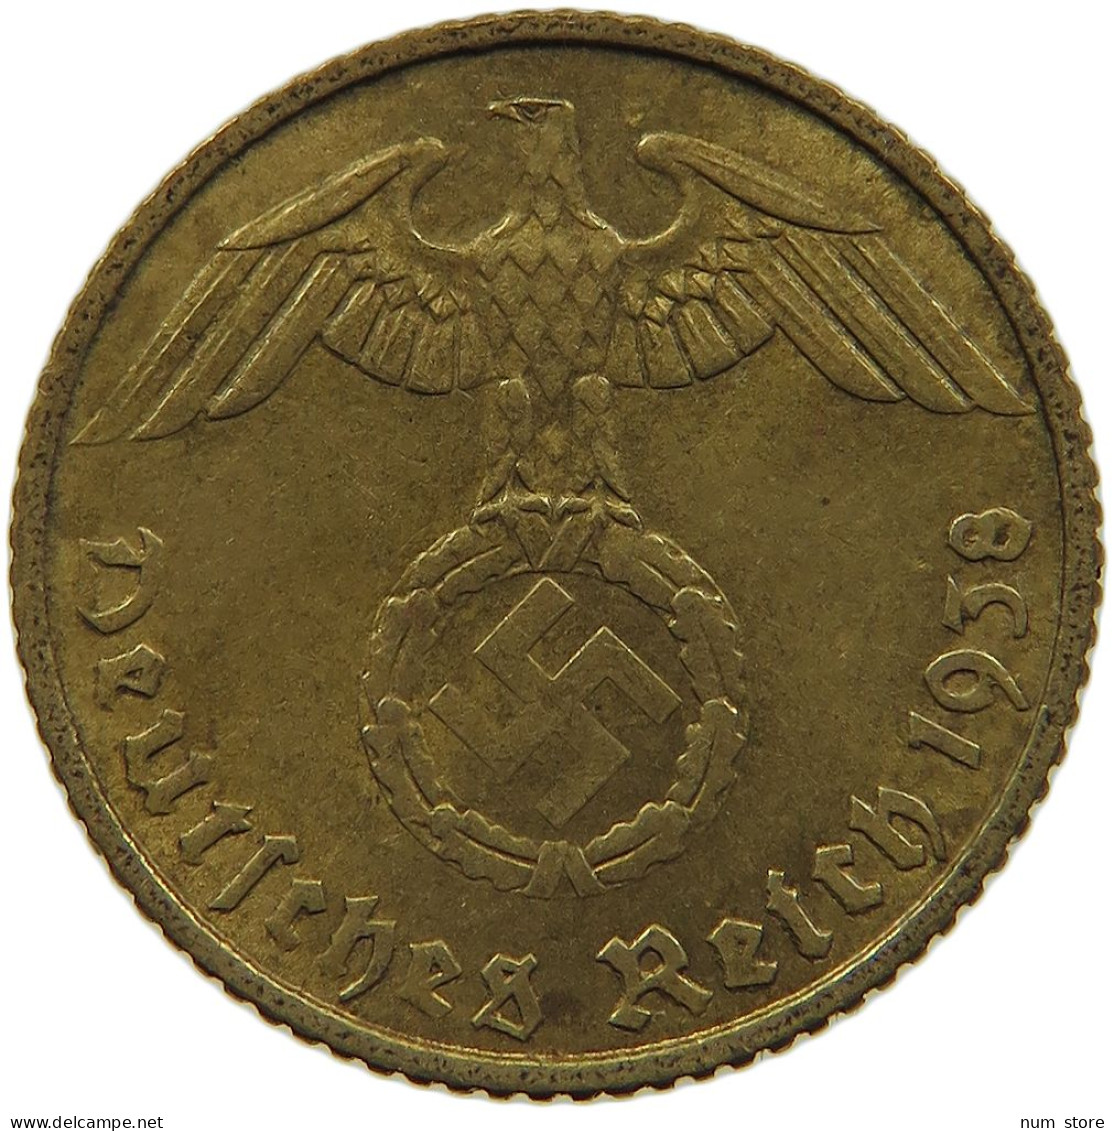 GERMANY 5 REICHSPFENNIG 1938 A #s091 0655 - 5 Reichspfennig